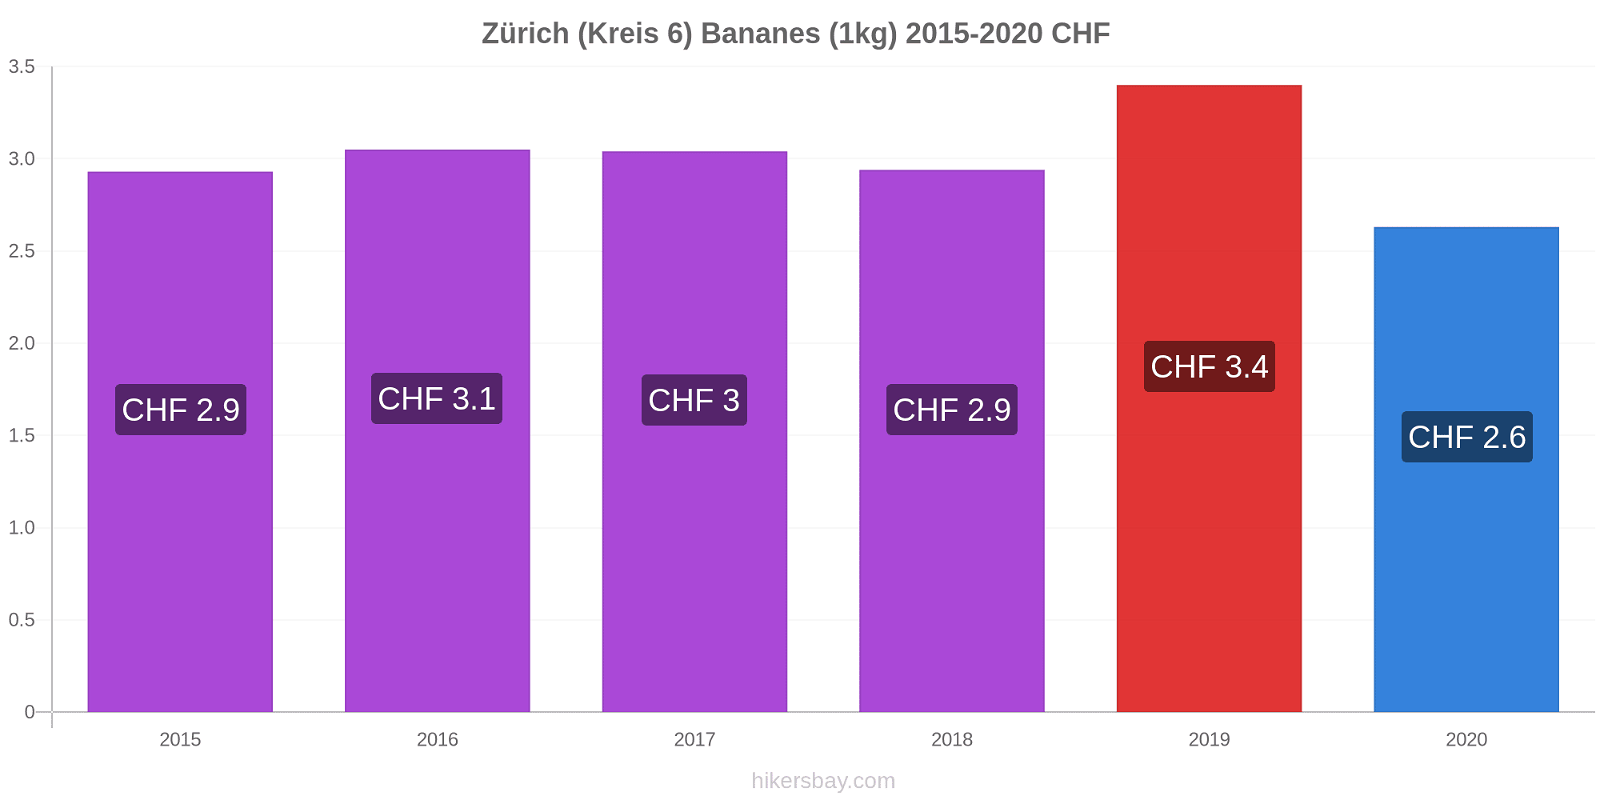 Zürich (Kreis 6) changements de prix Bananes (1kg) hikersbay.com